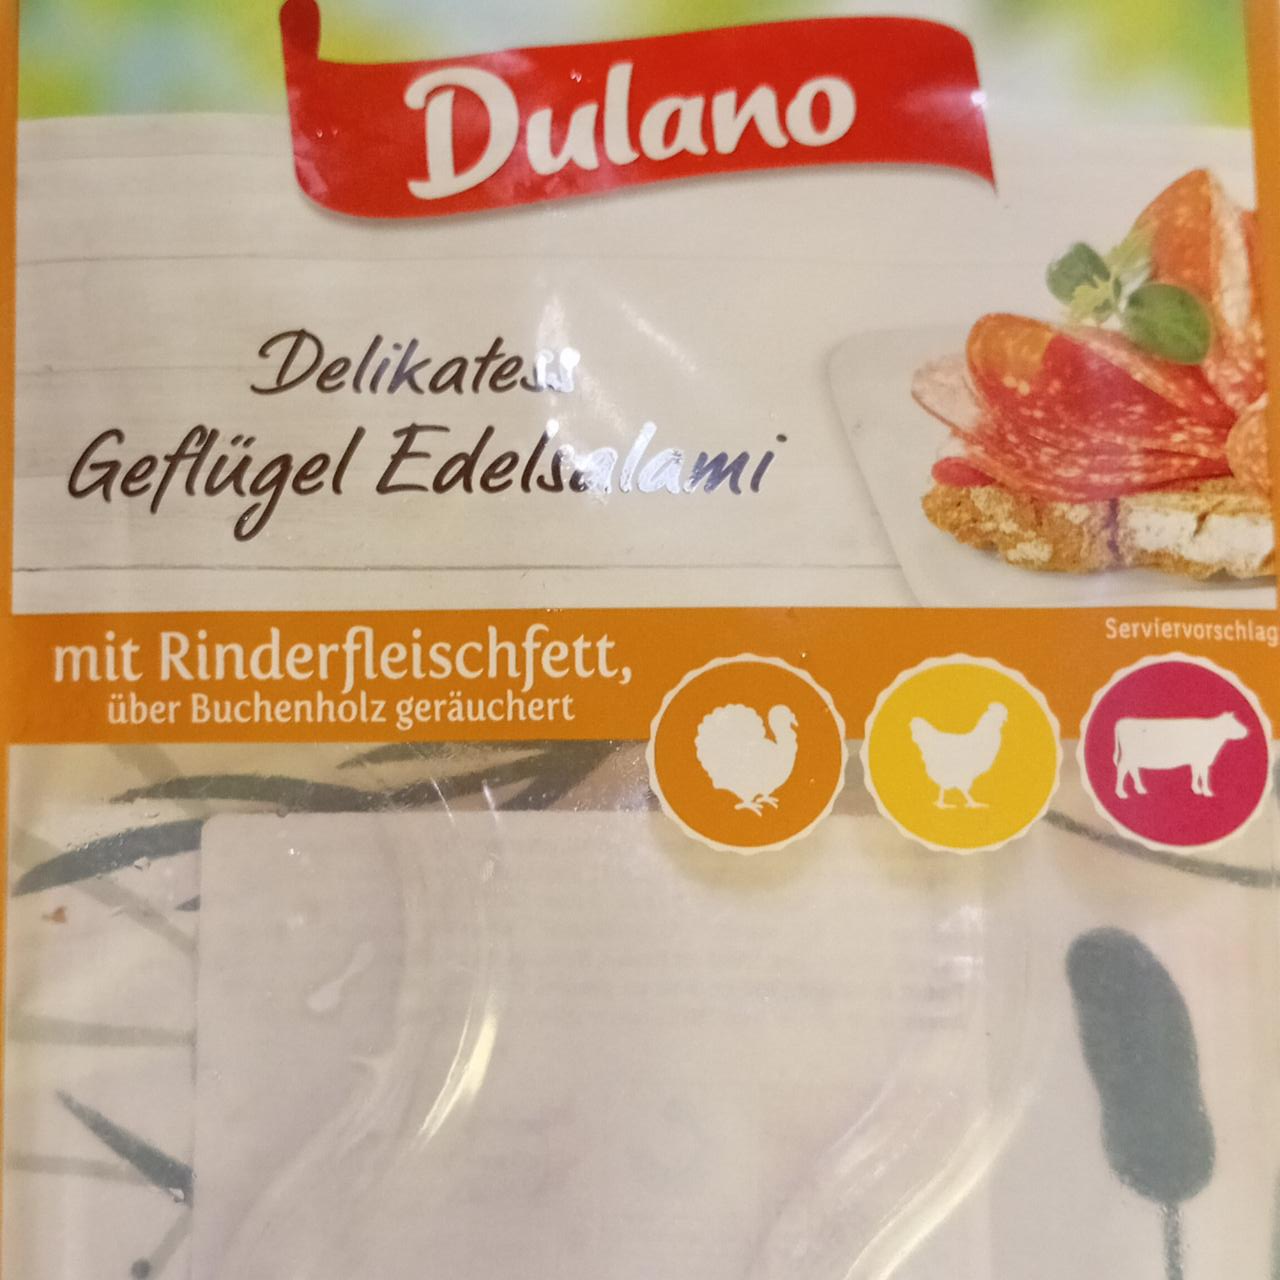 Fotografie - Delikatess Geflügel Edelsalami mit Rinderfleischfett geräuchert Dulano